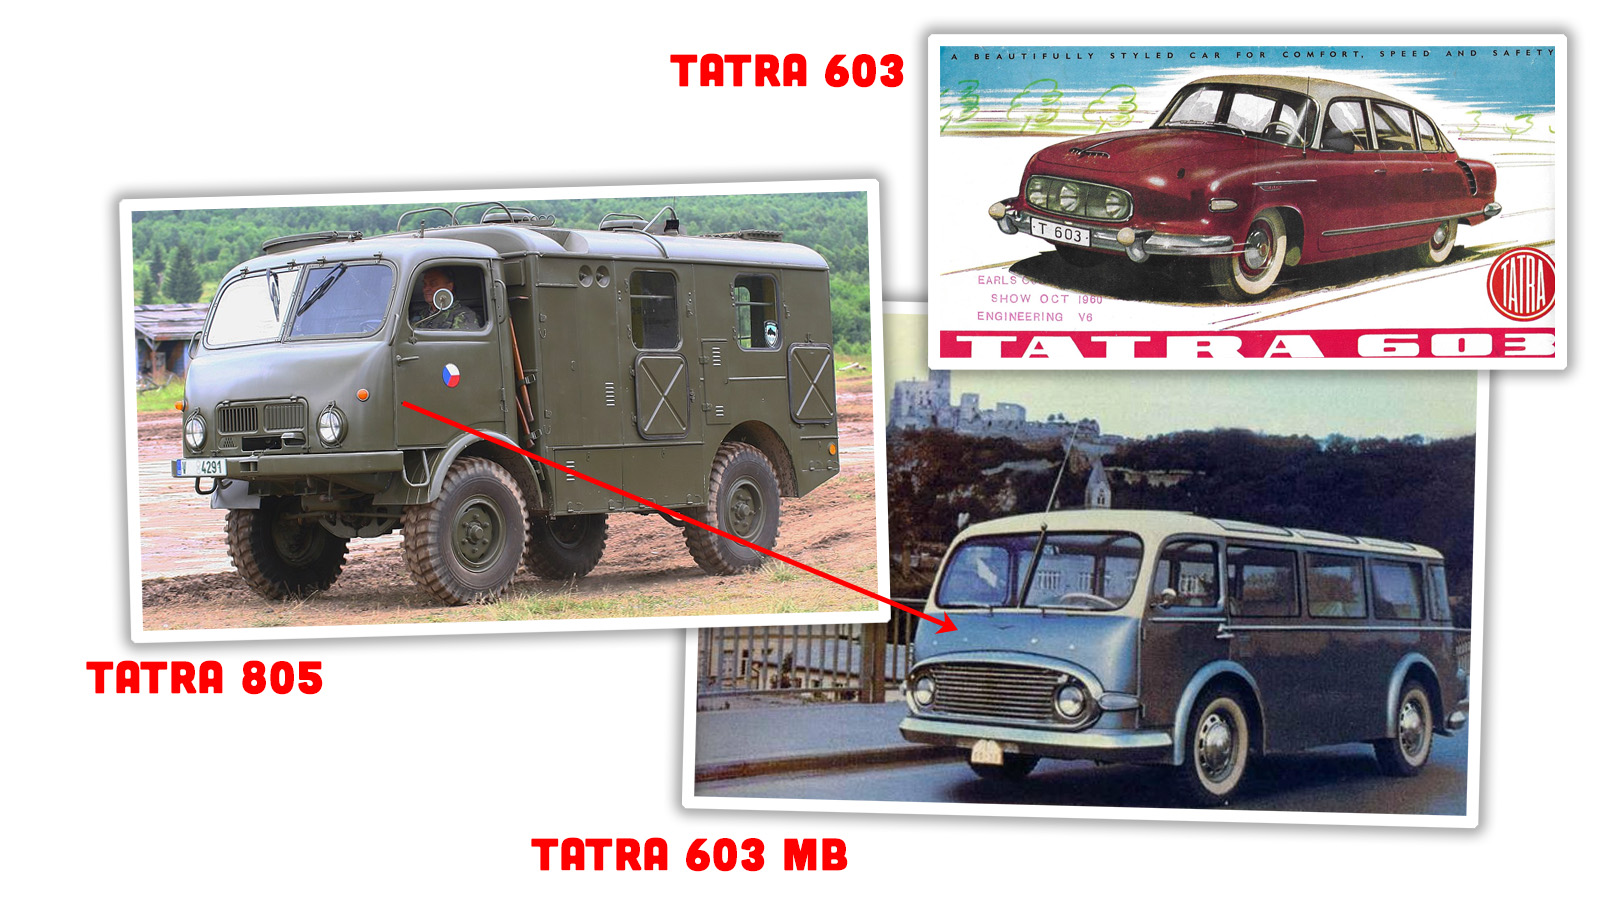 Tatra 31 Wallpapers